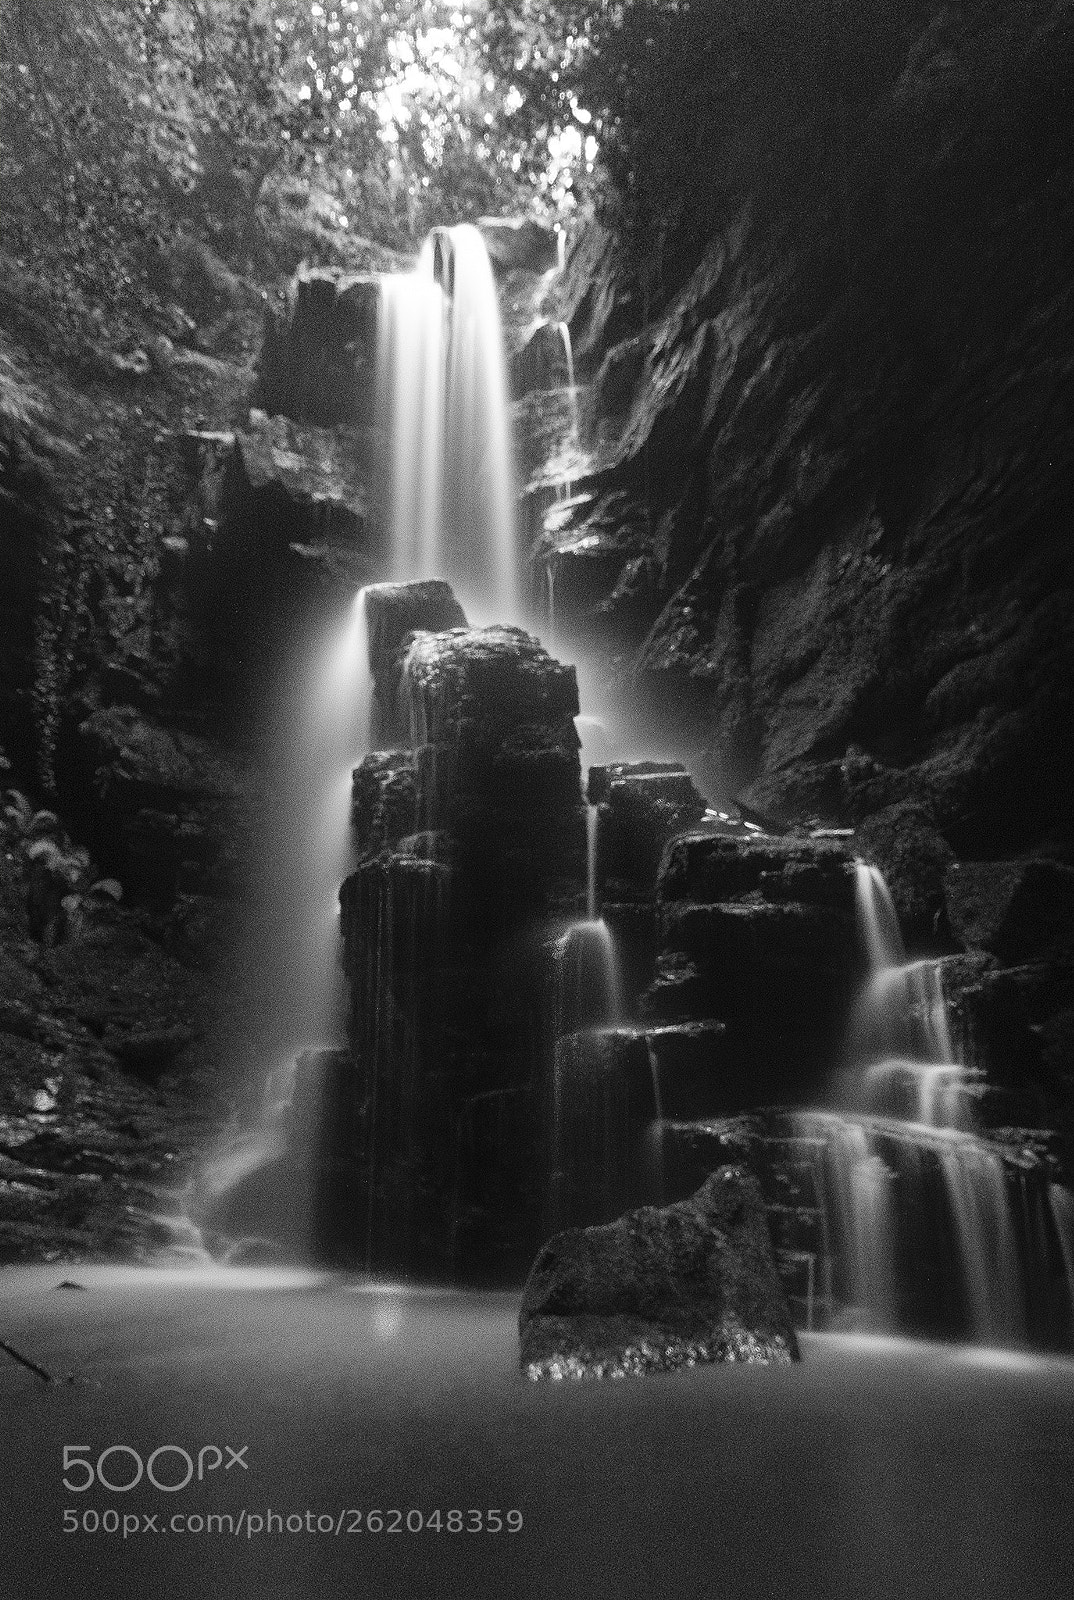 Nikon D7100 sample photo. Dağpınarı waterfall photography